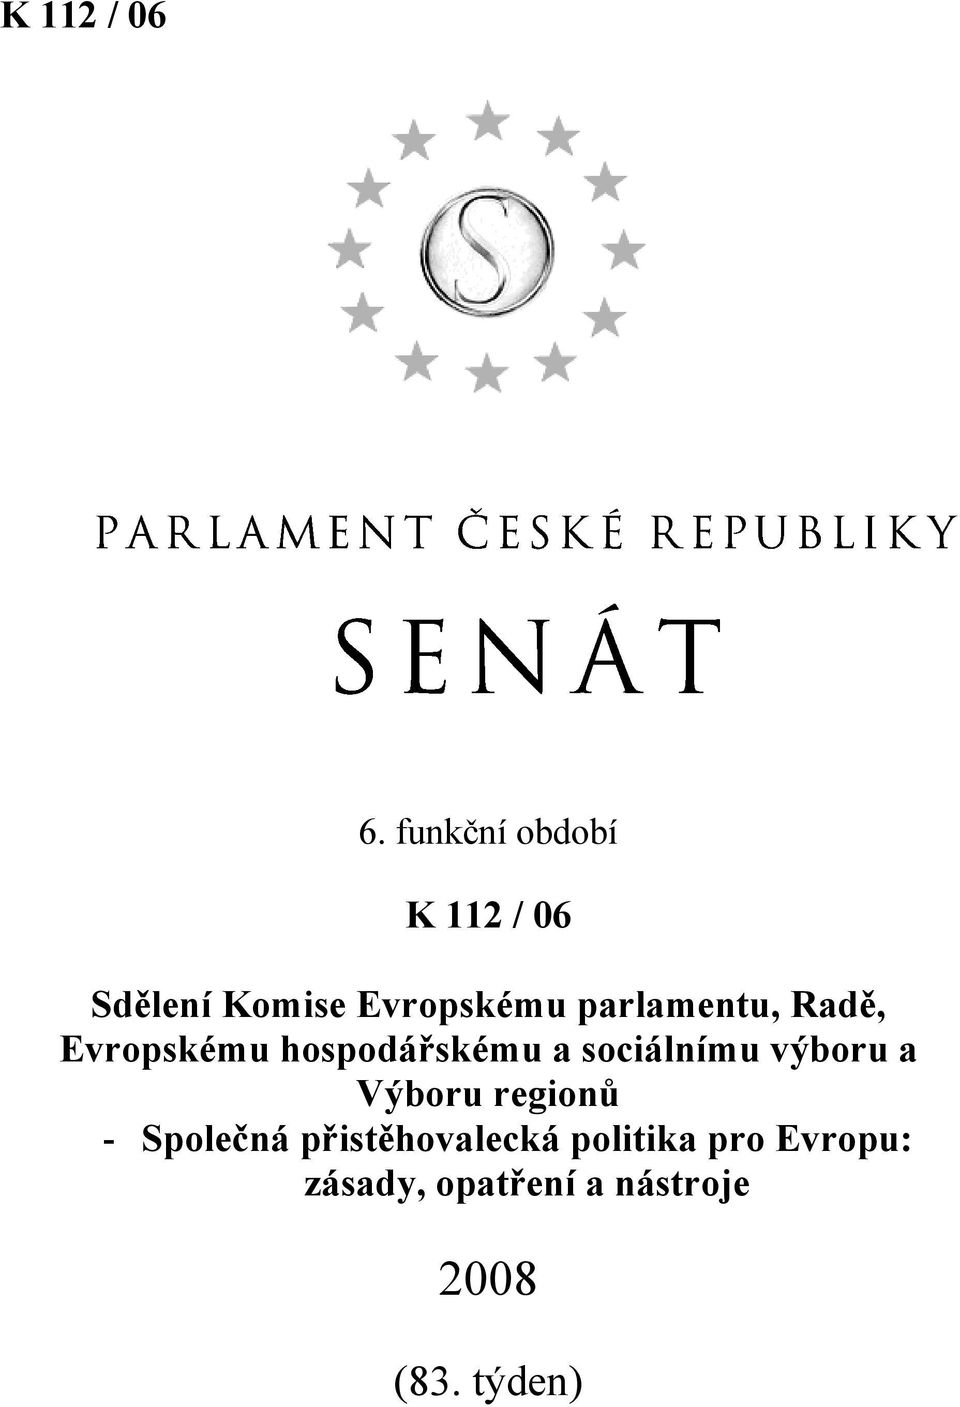 parlamentu, Radě, Evropskému hospodářskému a sociálnímu